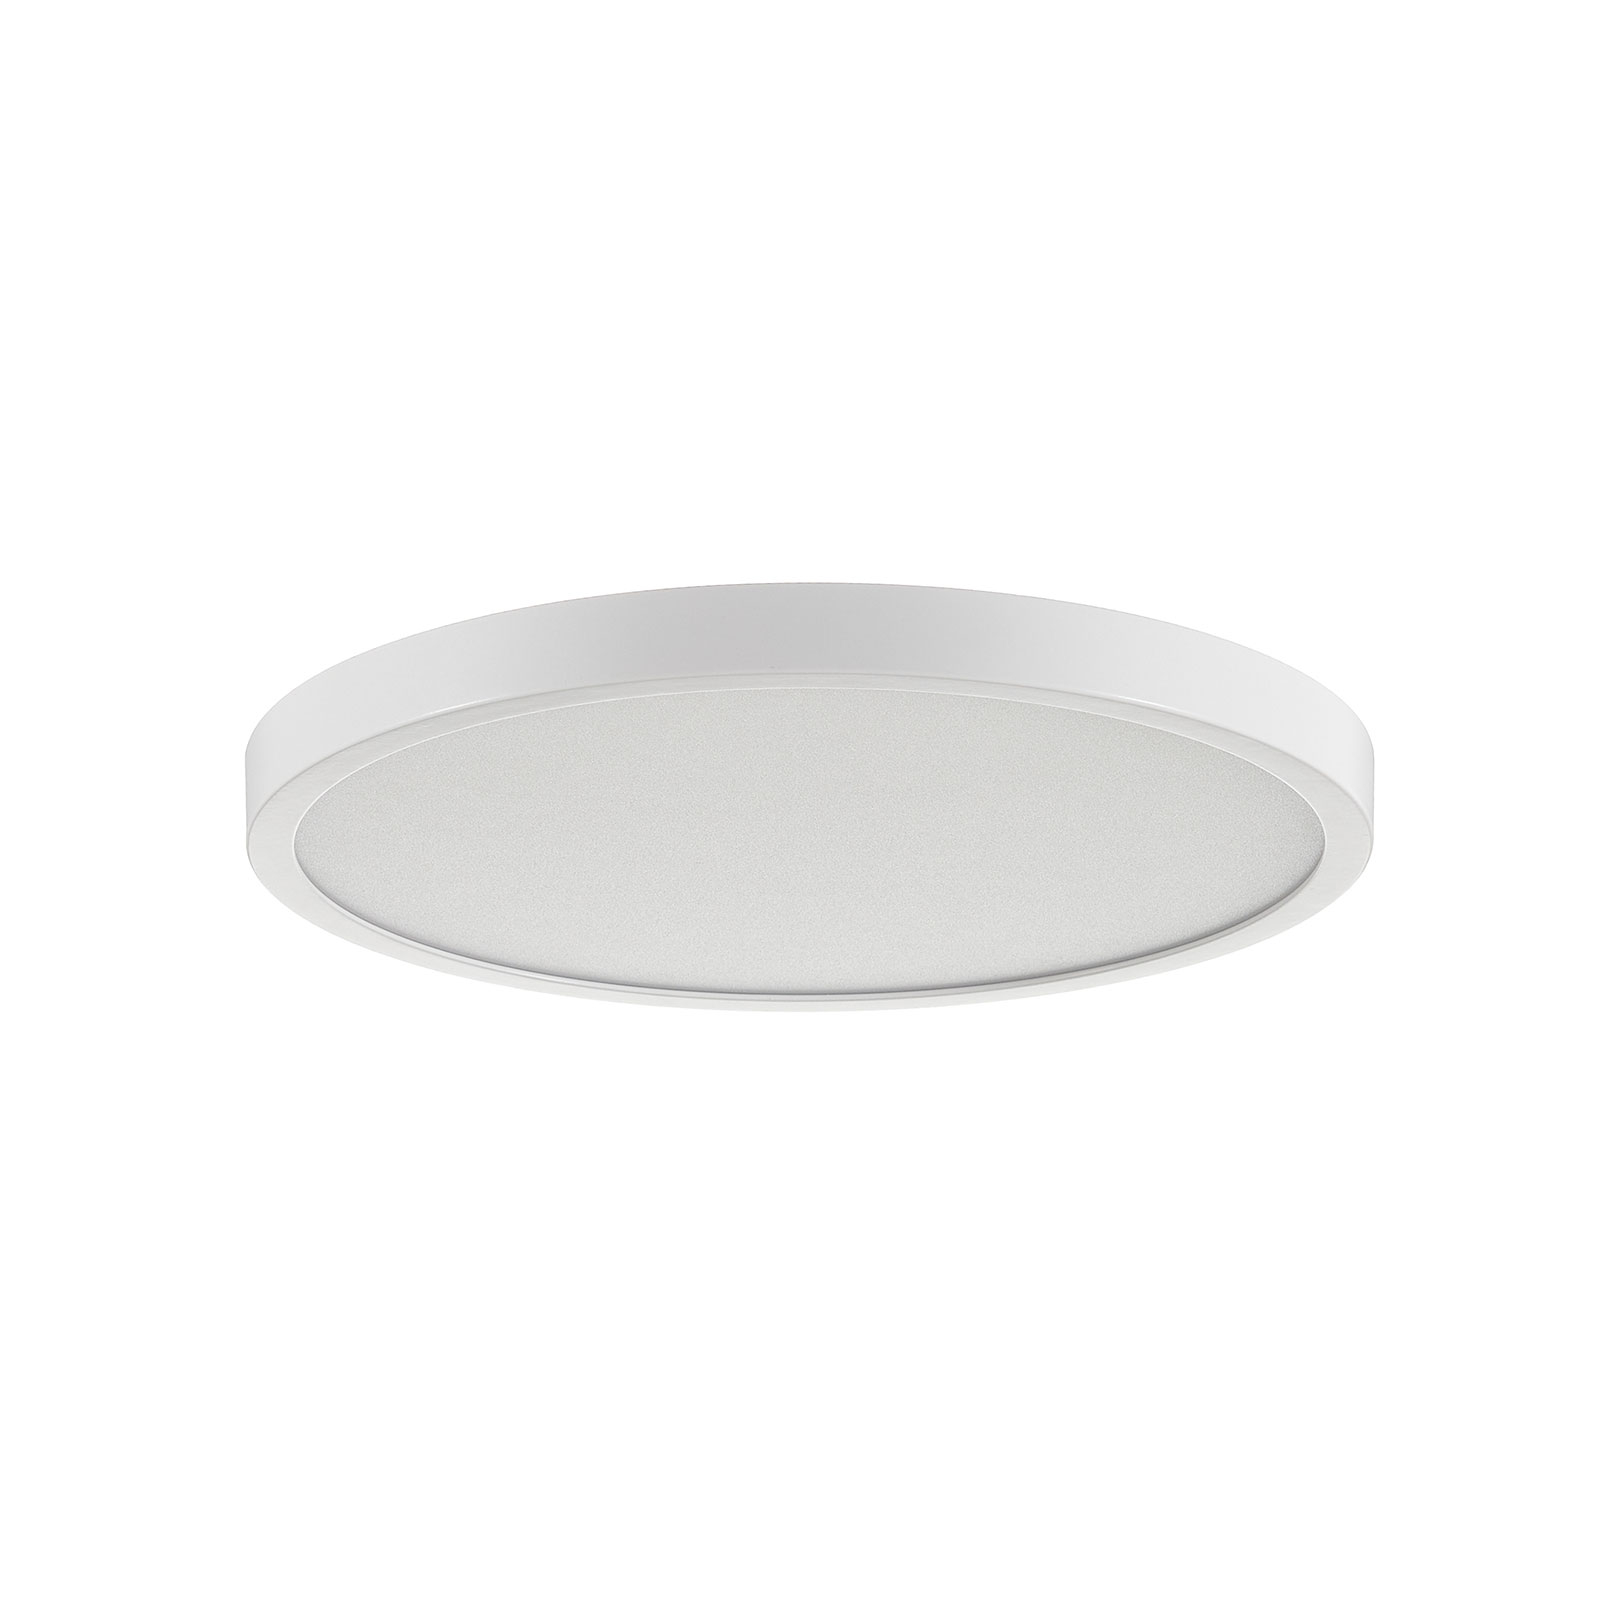 Stropné LED svietidlo Vika, okrúhle, biele, Ø 30cm